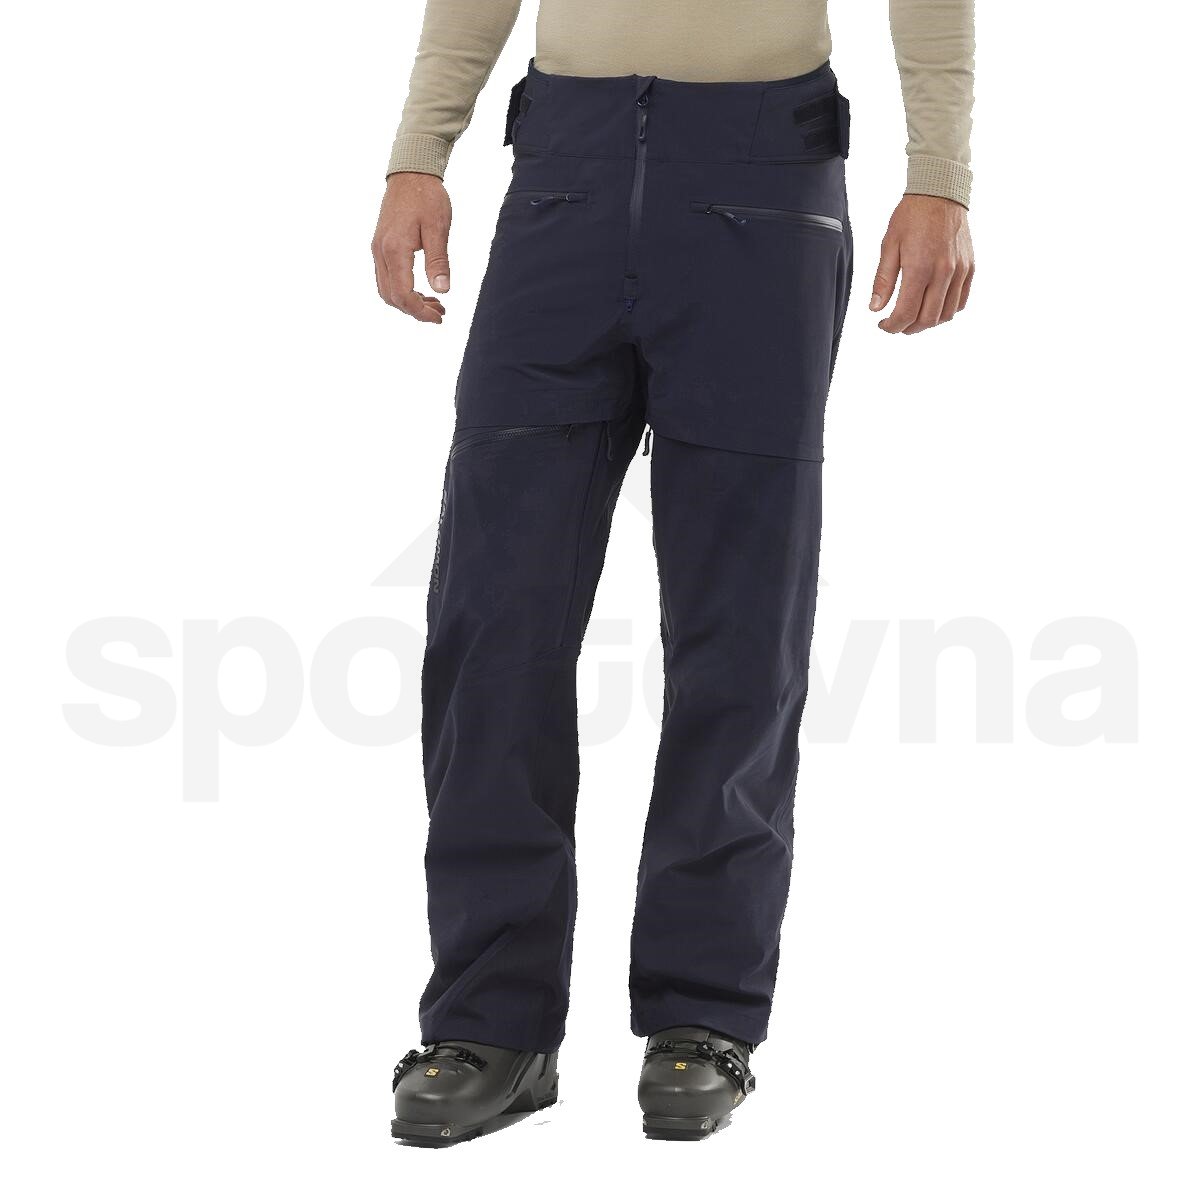 Kalhoty Salomon Force 3L Pants M - modrá